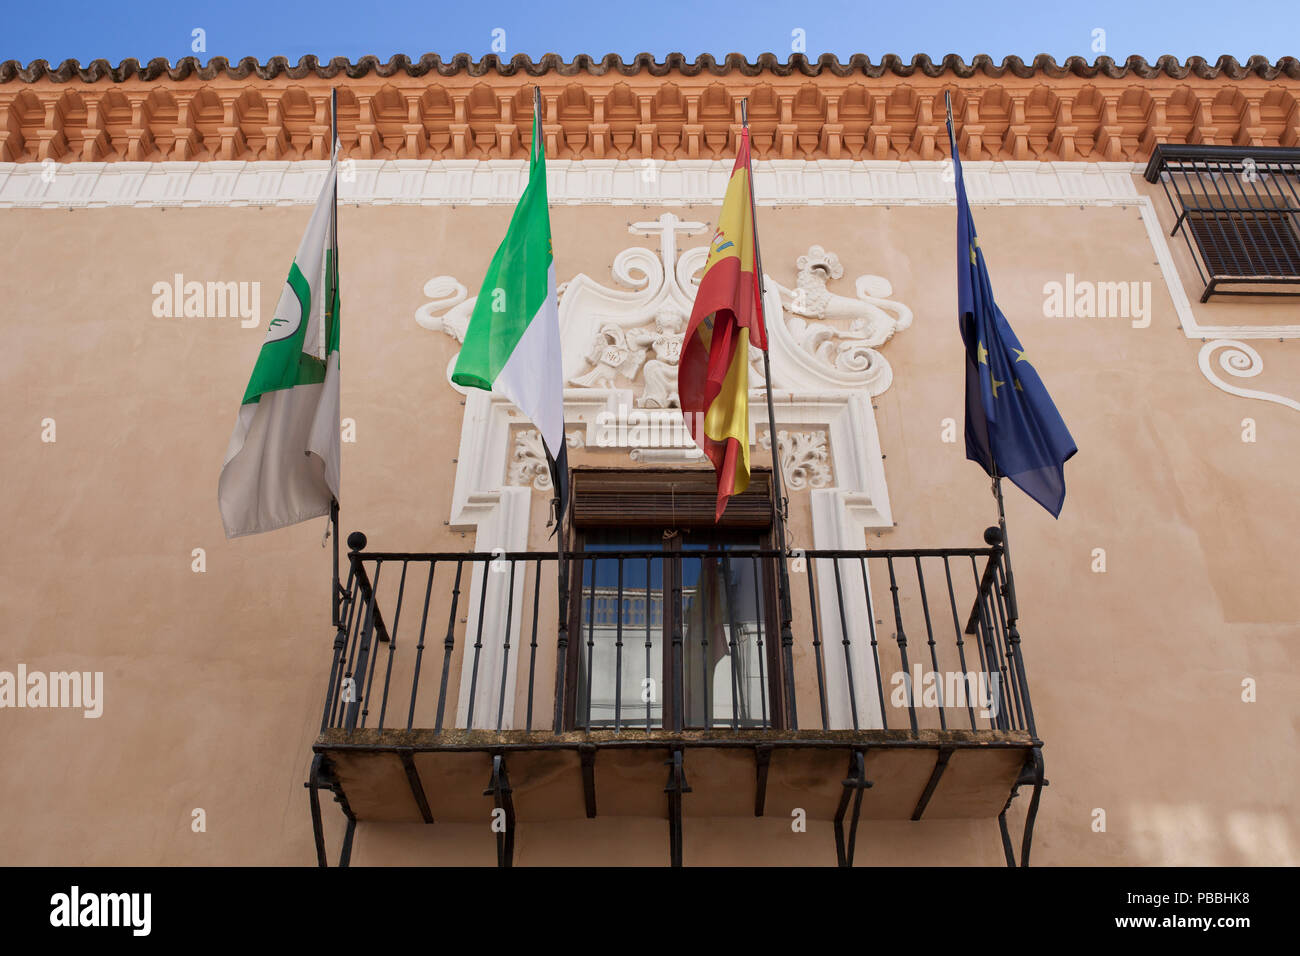 Almendralejo, España. Enero 26th, 2018: Edificio del Ayuntamiento antiguo Palacio de Monsalud, de Almendralejo, Badajoz, España. Balcón con banderas Foto de stock